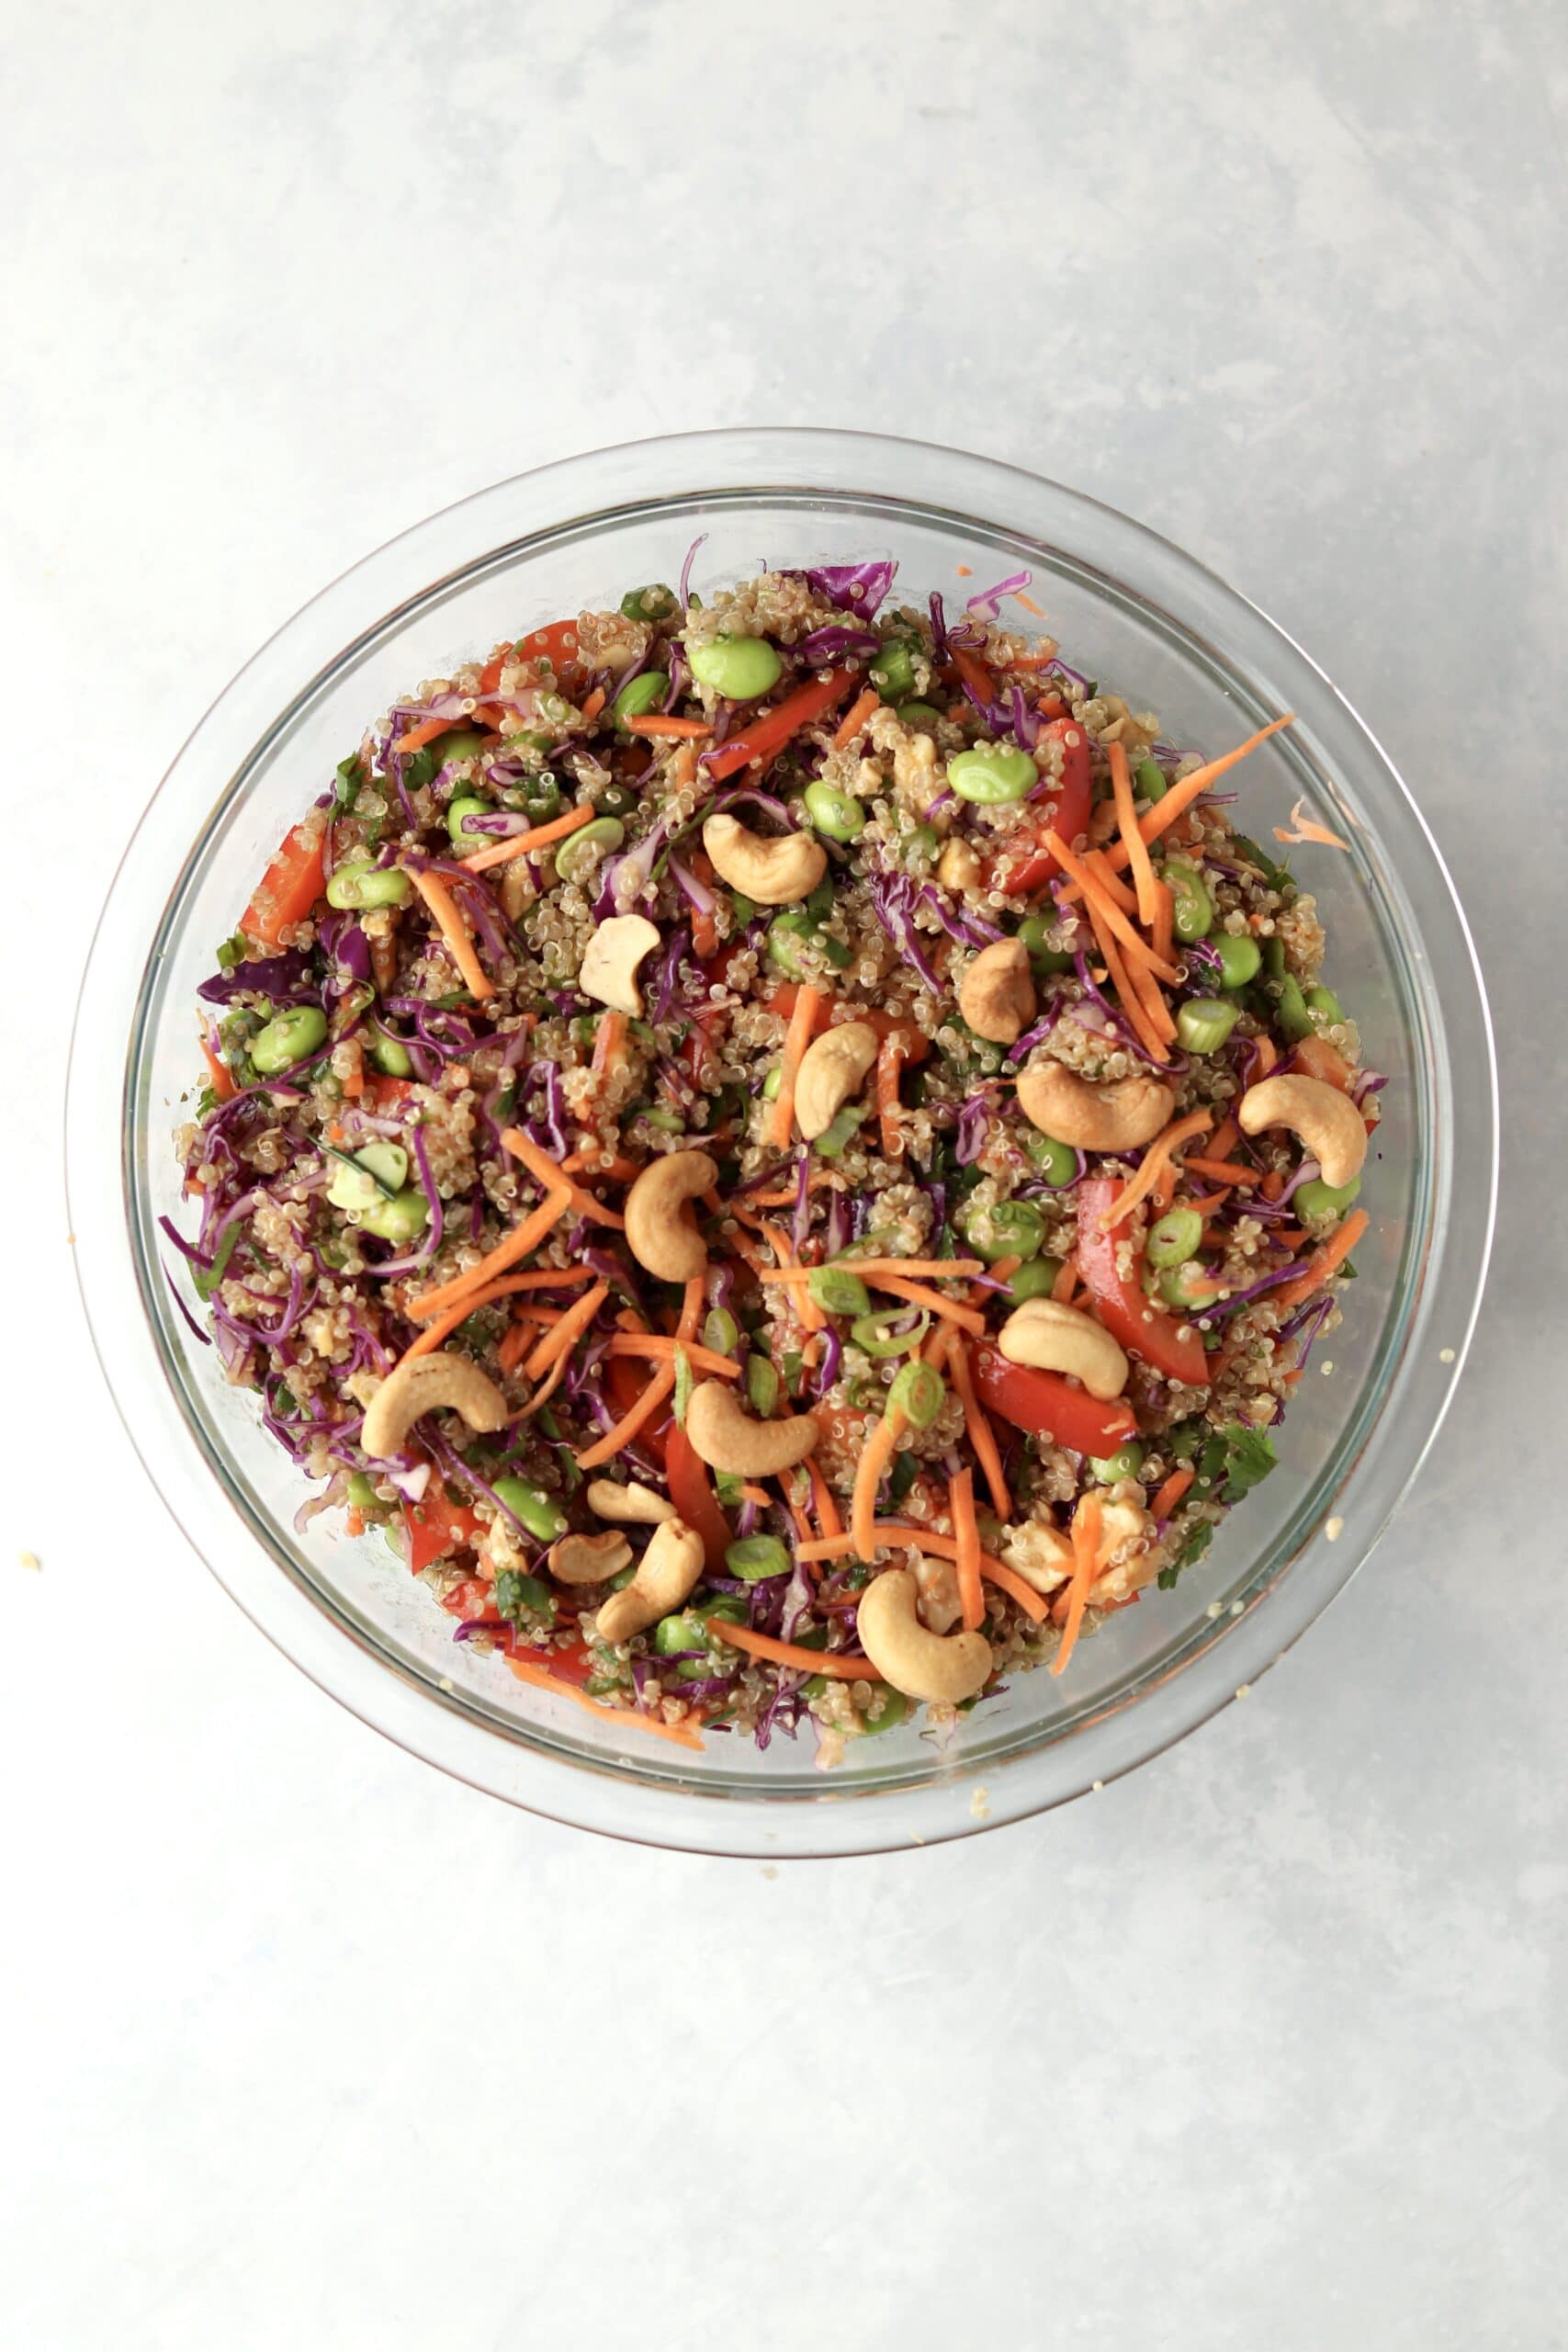 tossed quinoa veggie salad with cashews